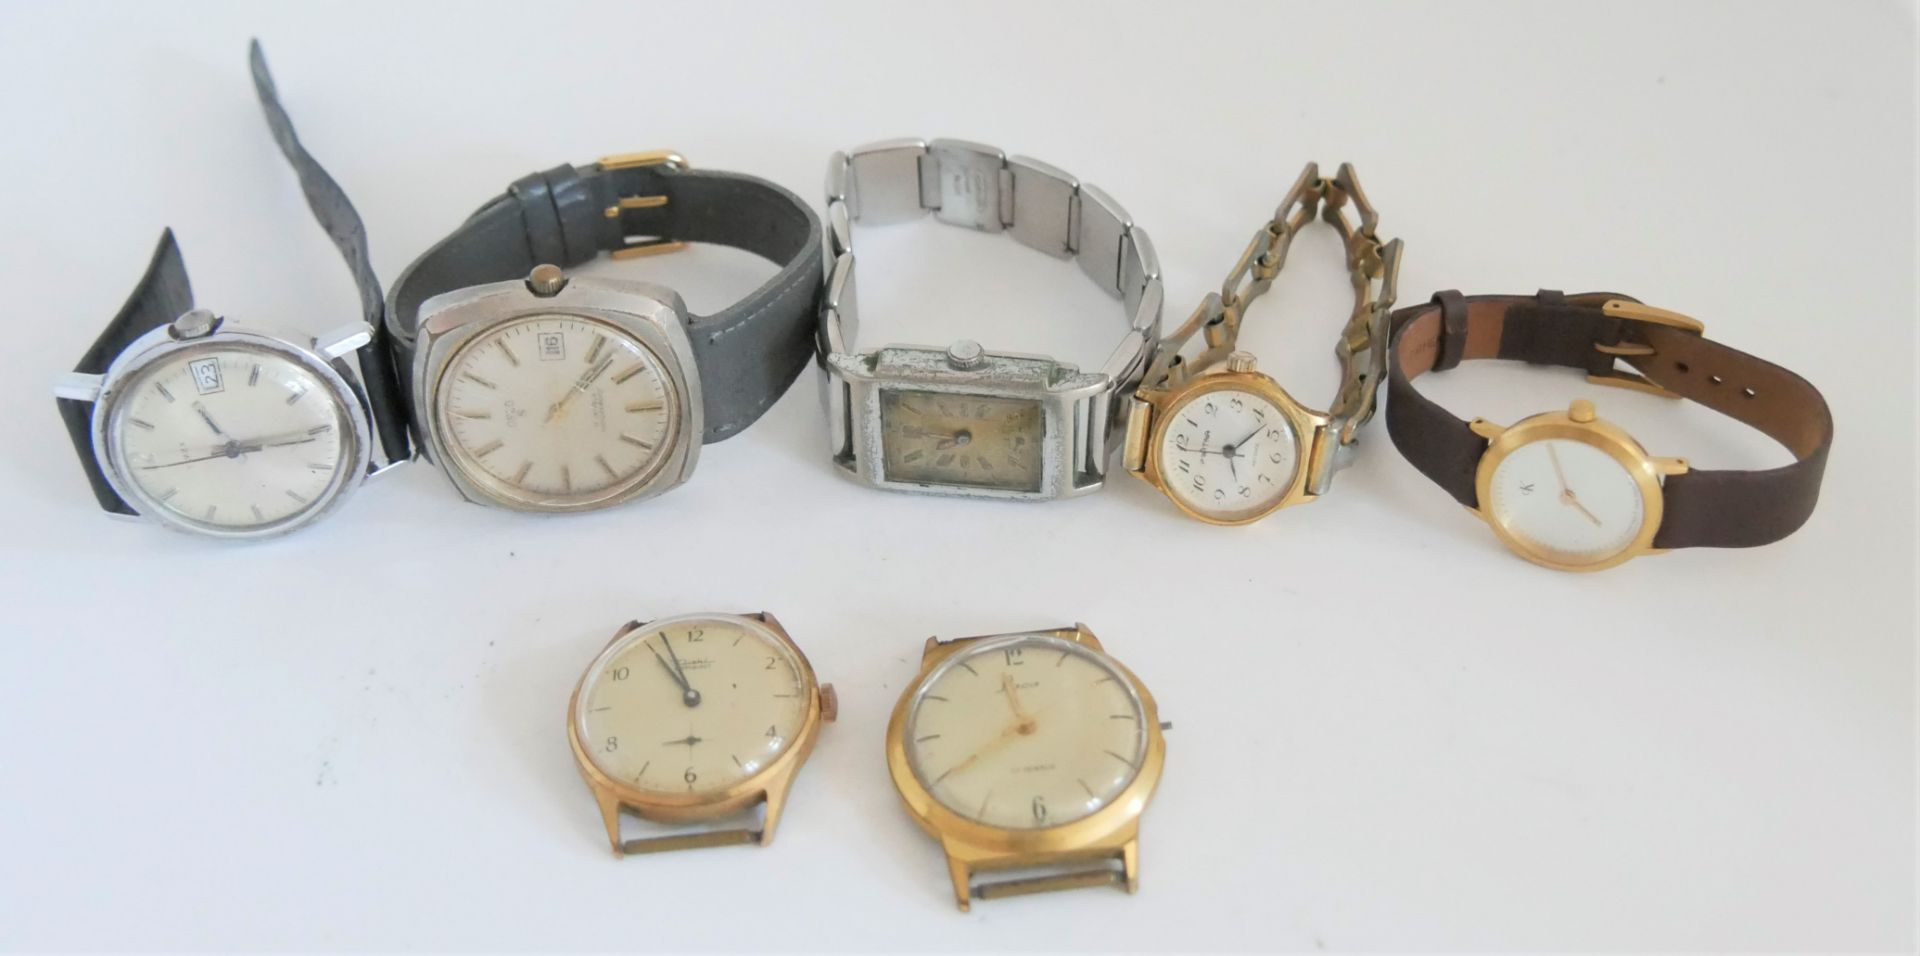 Lot Herren- und Armbanduhren, verschiedene Modelle, dabei auch viele mechanische